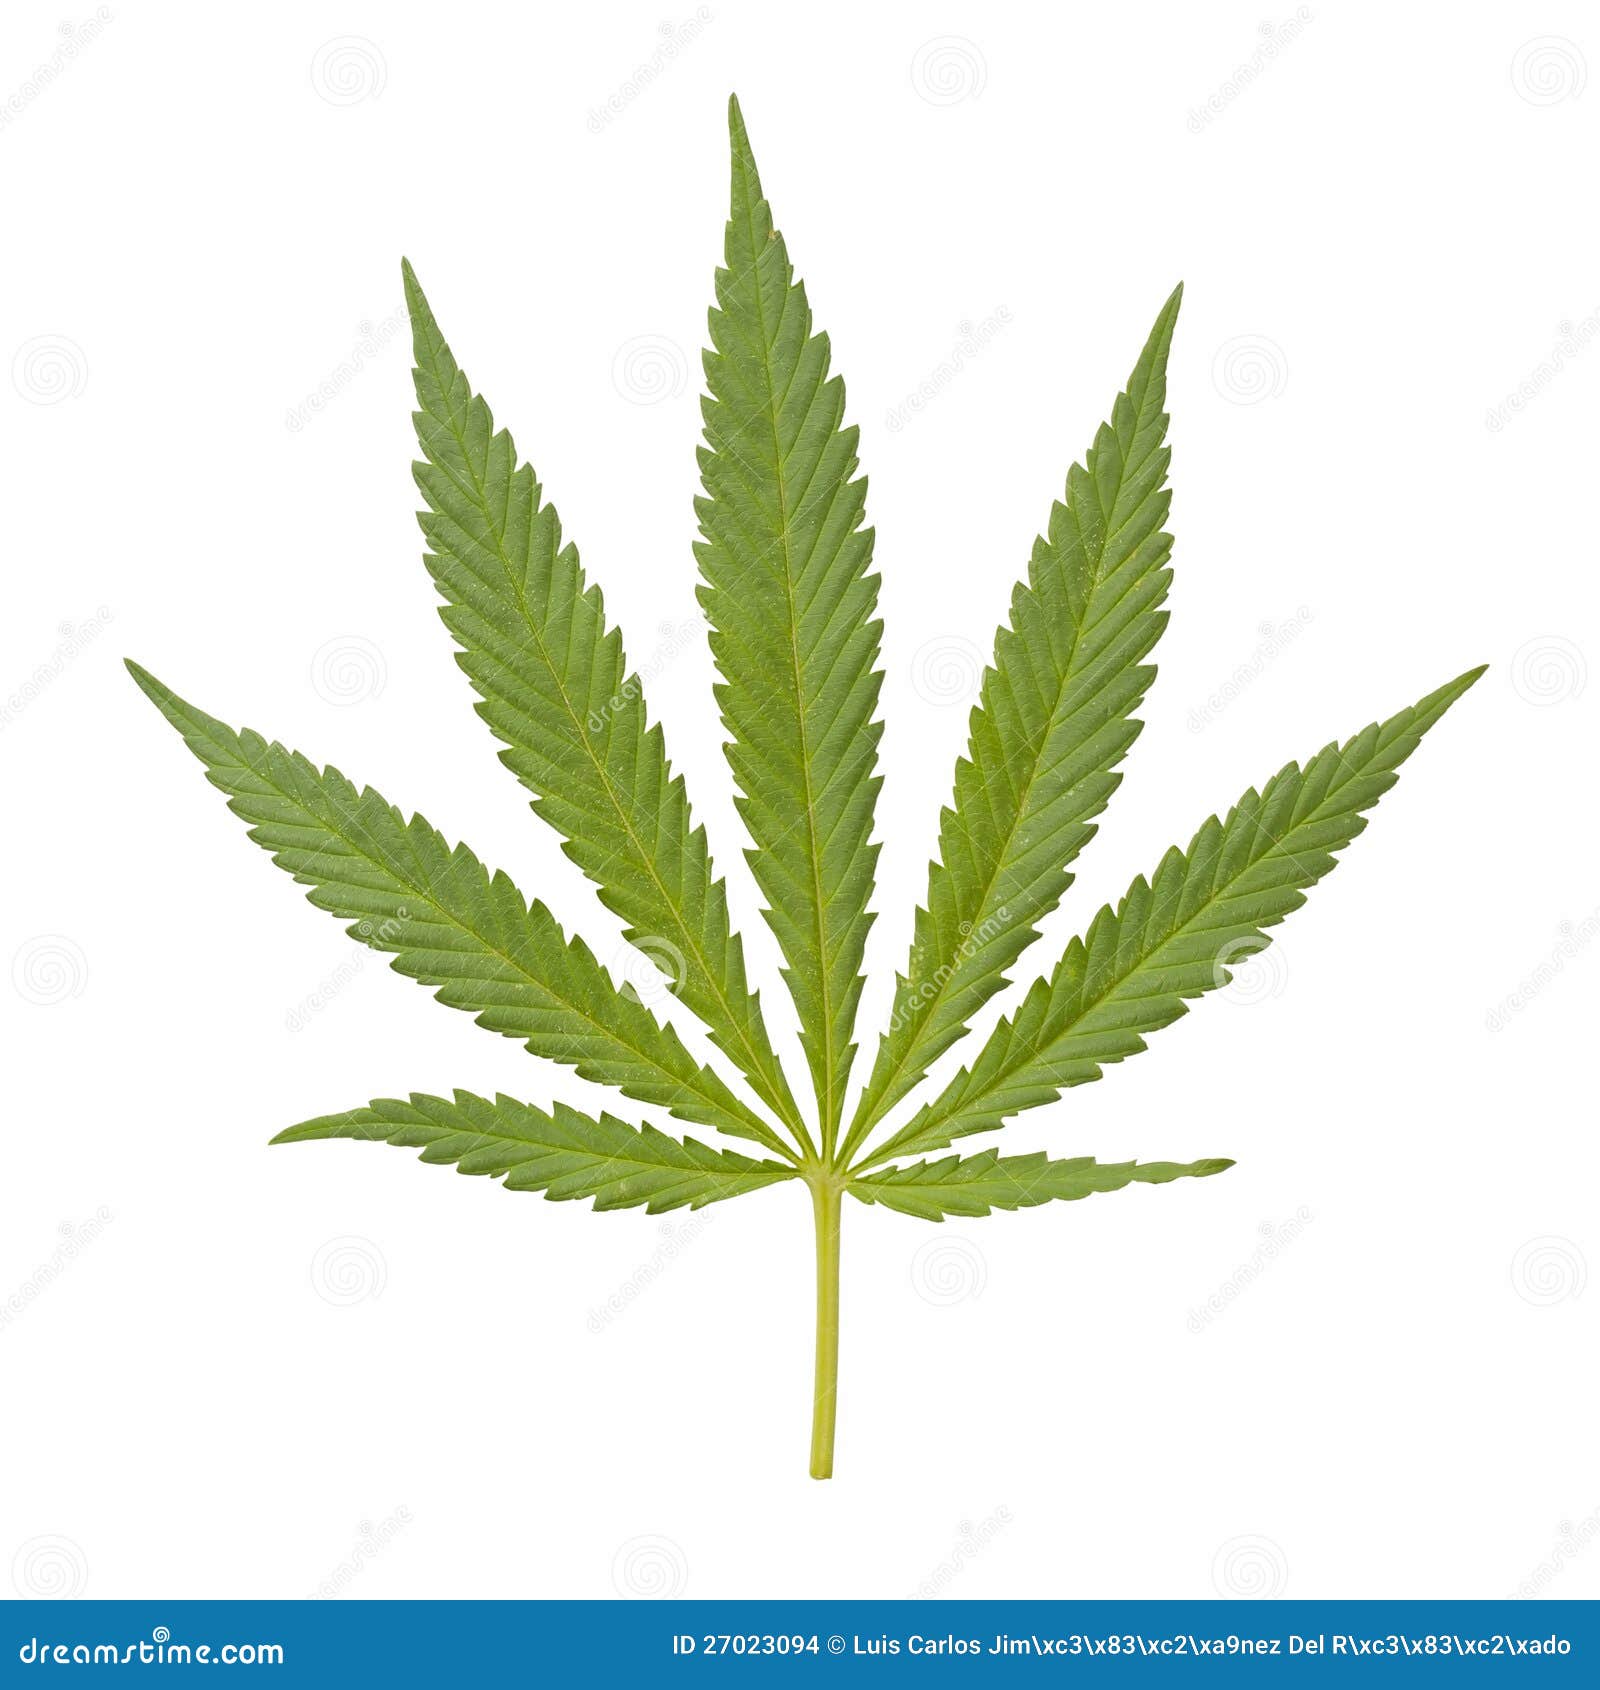 Картинка листок марихуаны видео о выращивание марихуаны